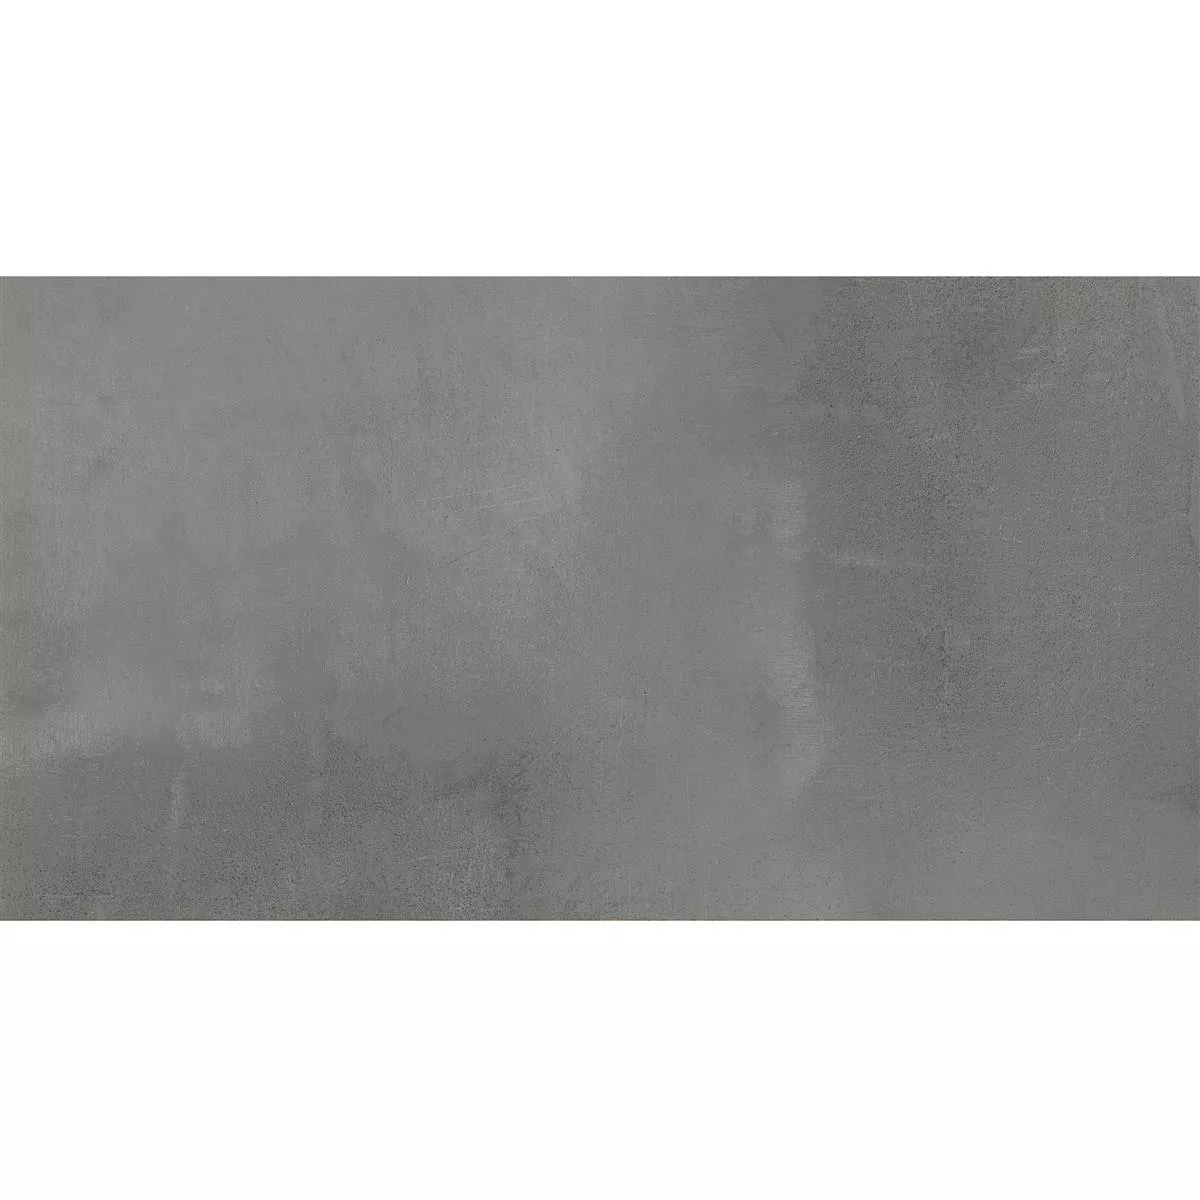 Πλακάκι Δαπέδου Brazil Σκούρο Γκρι 30x60cm